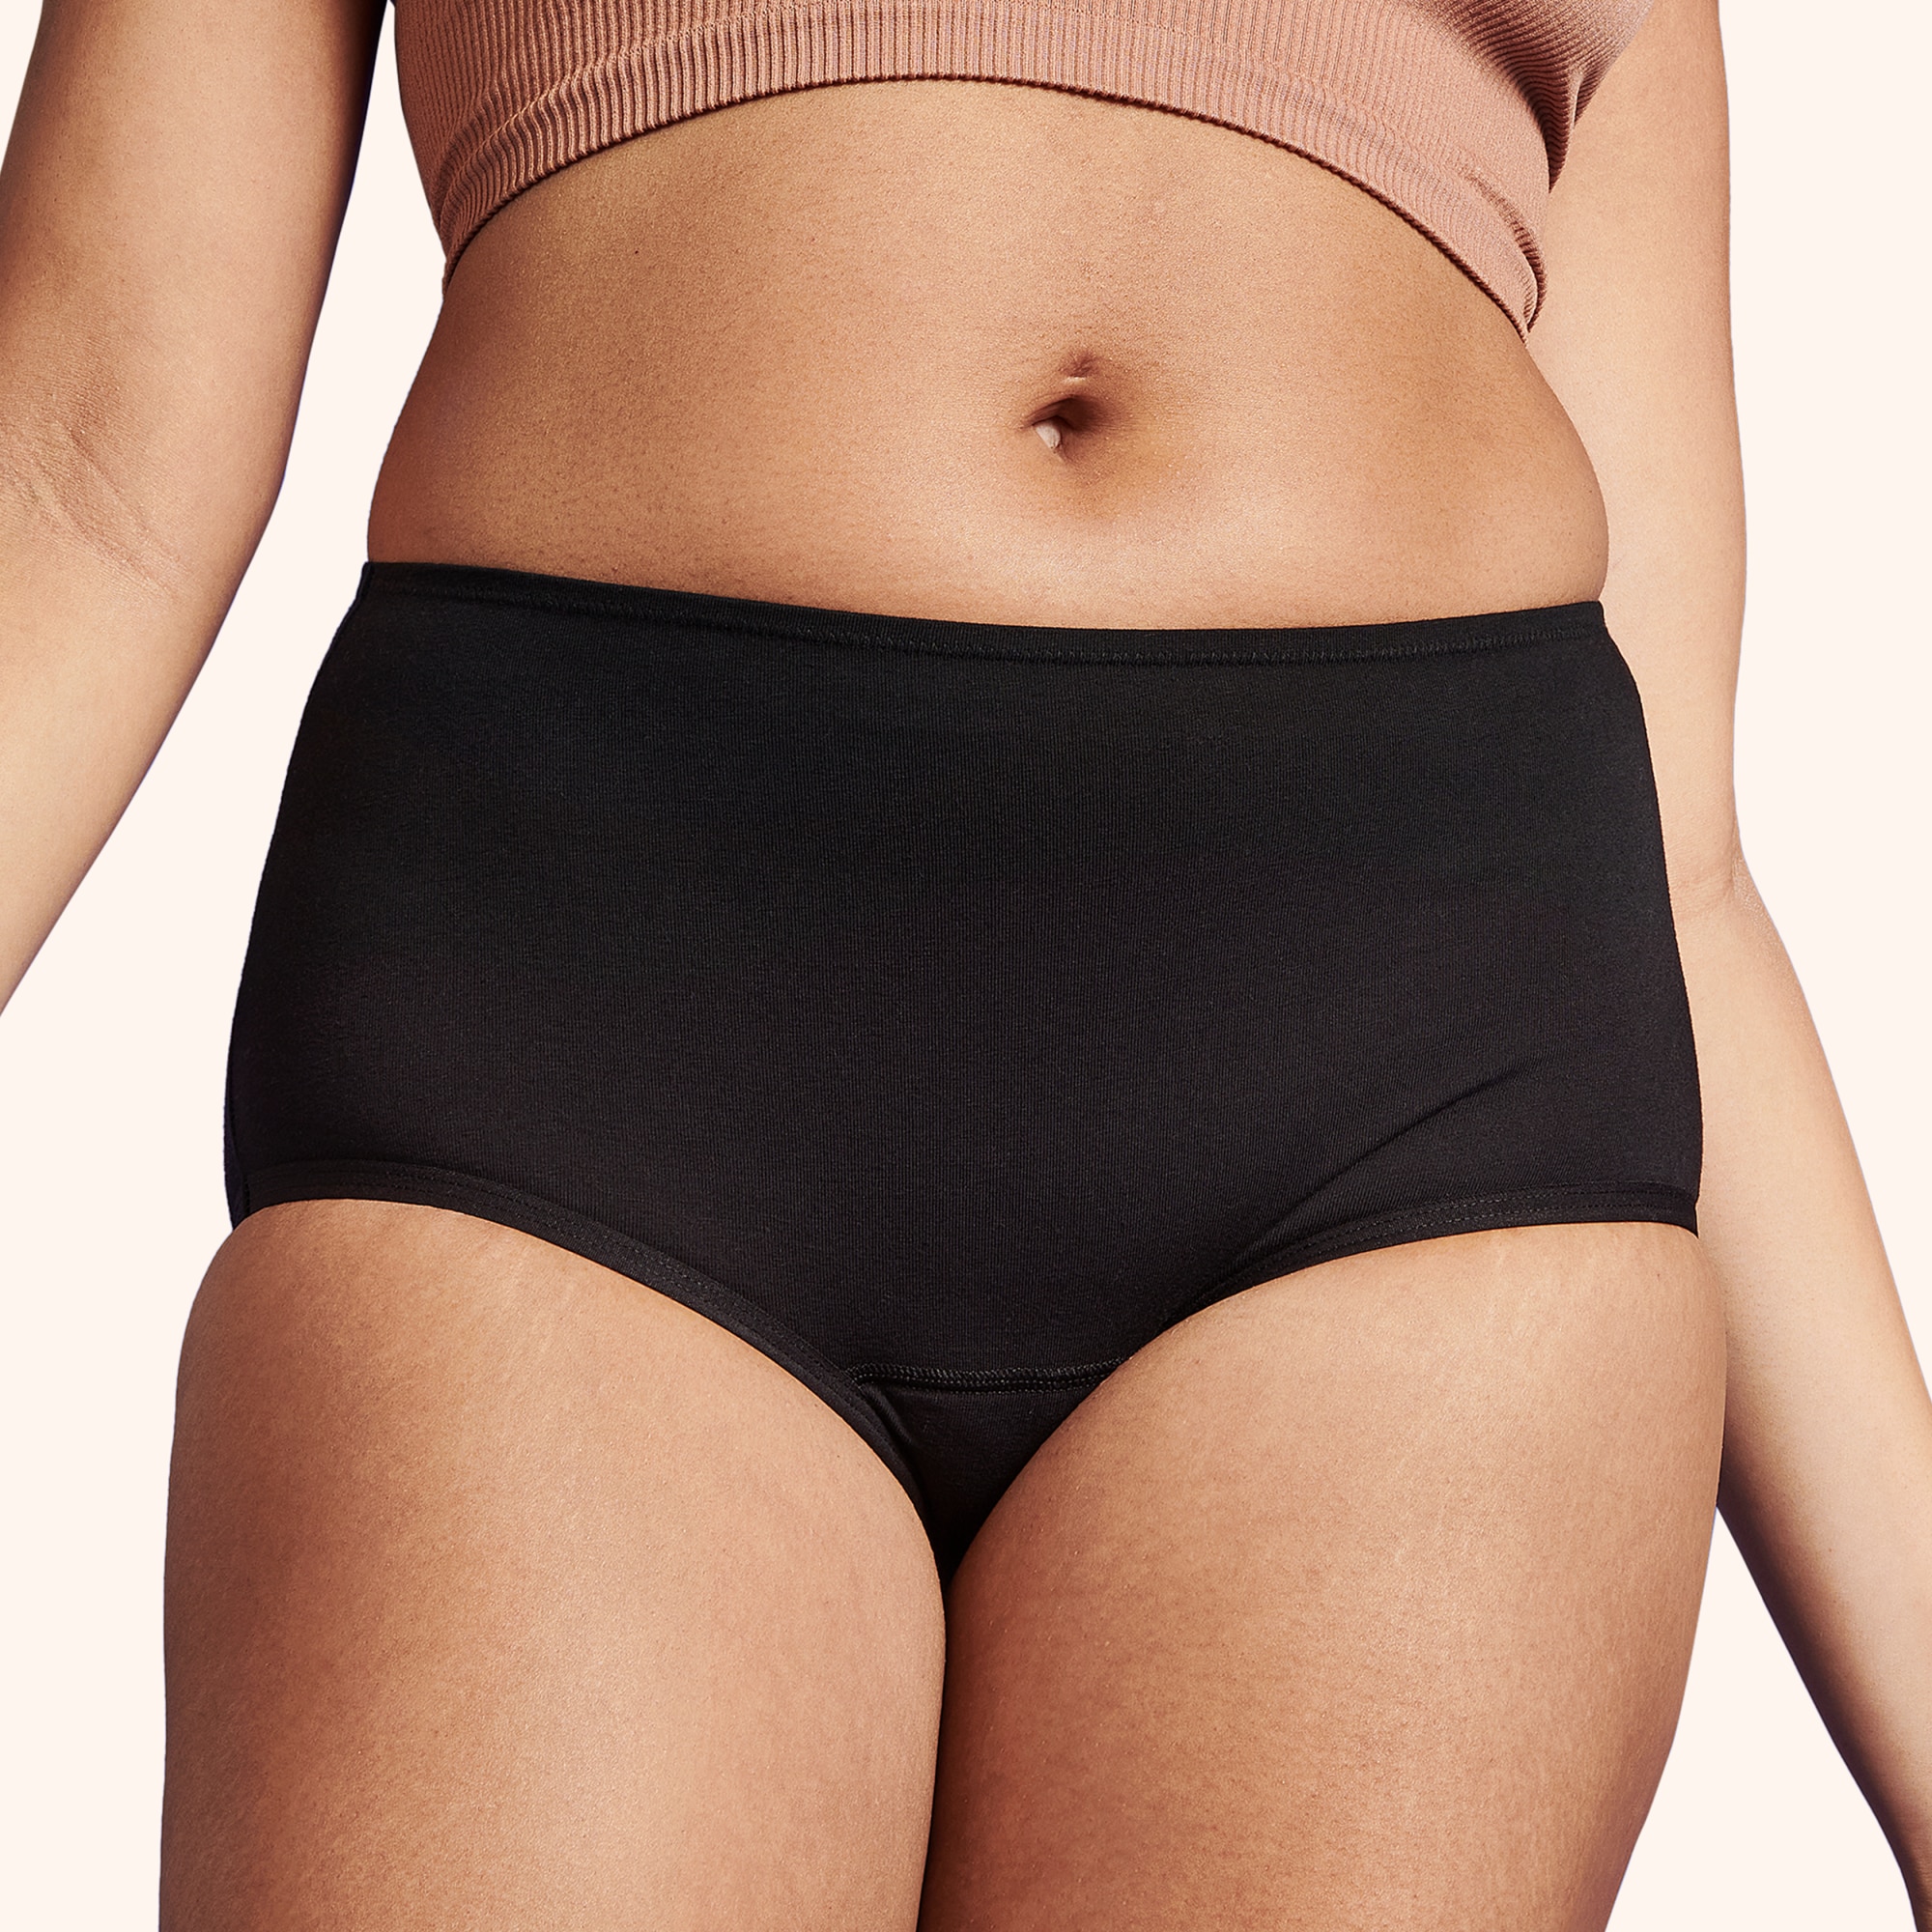 Popular Girls Underwear Hipster Panty - Soft Cotton Turkey